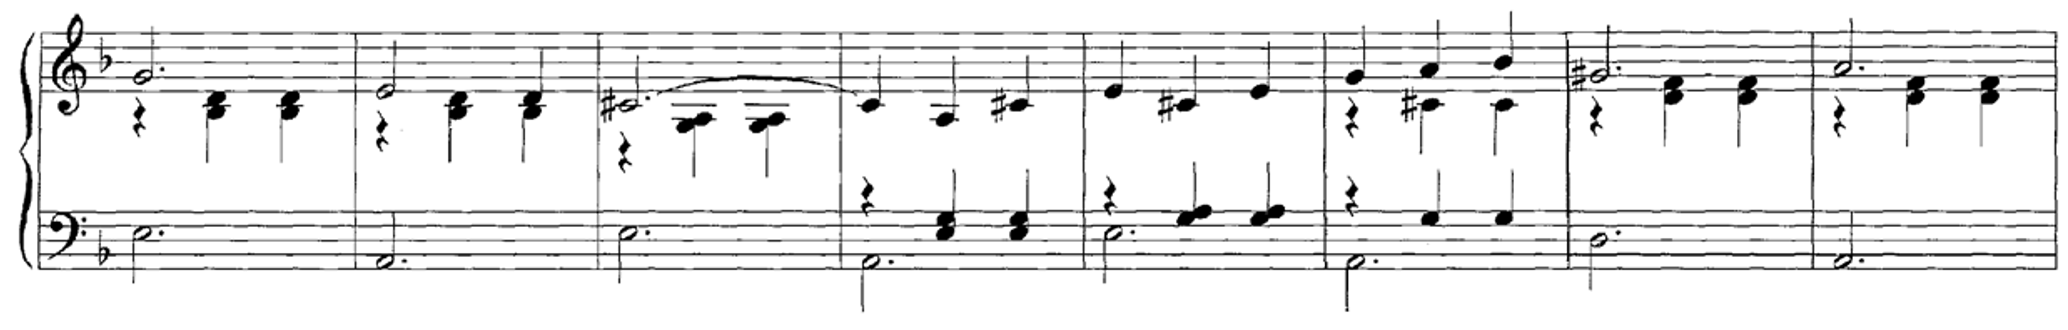 FMP_C6_F07_Shostakovich_Waltz-02-Section_Score.png